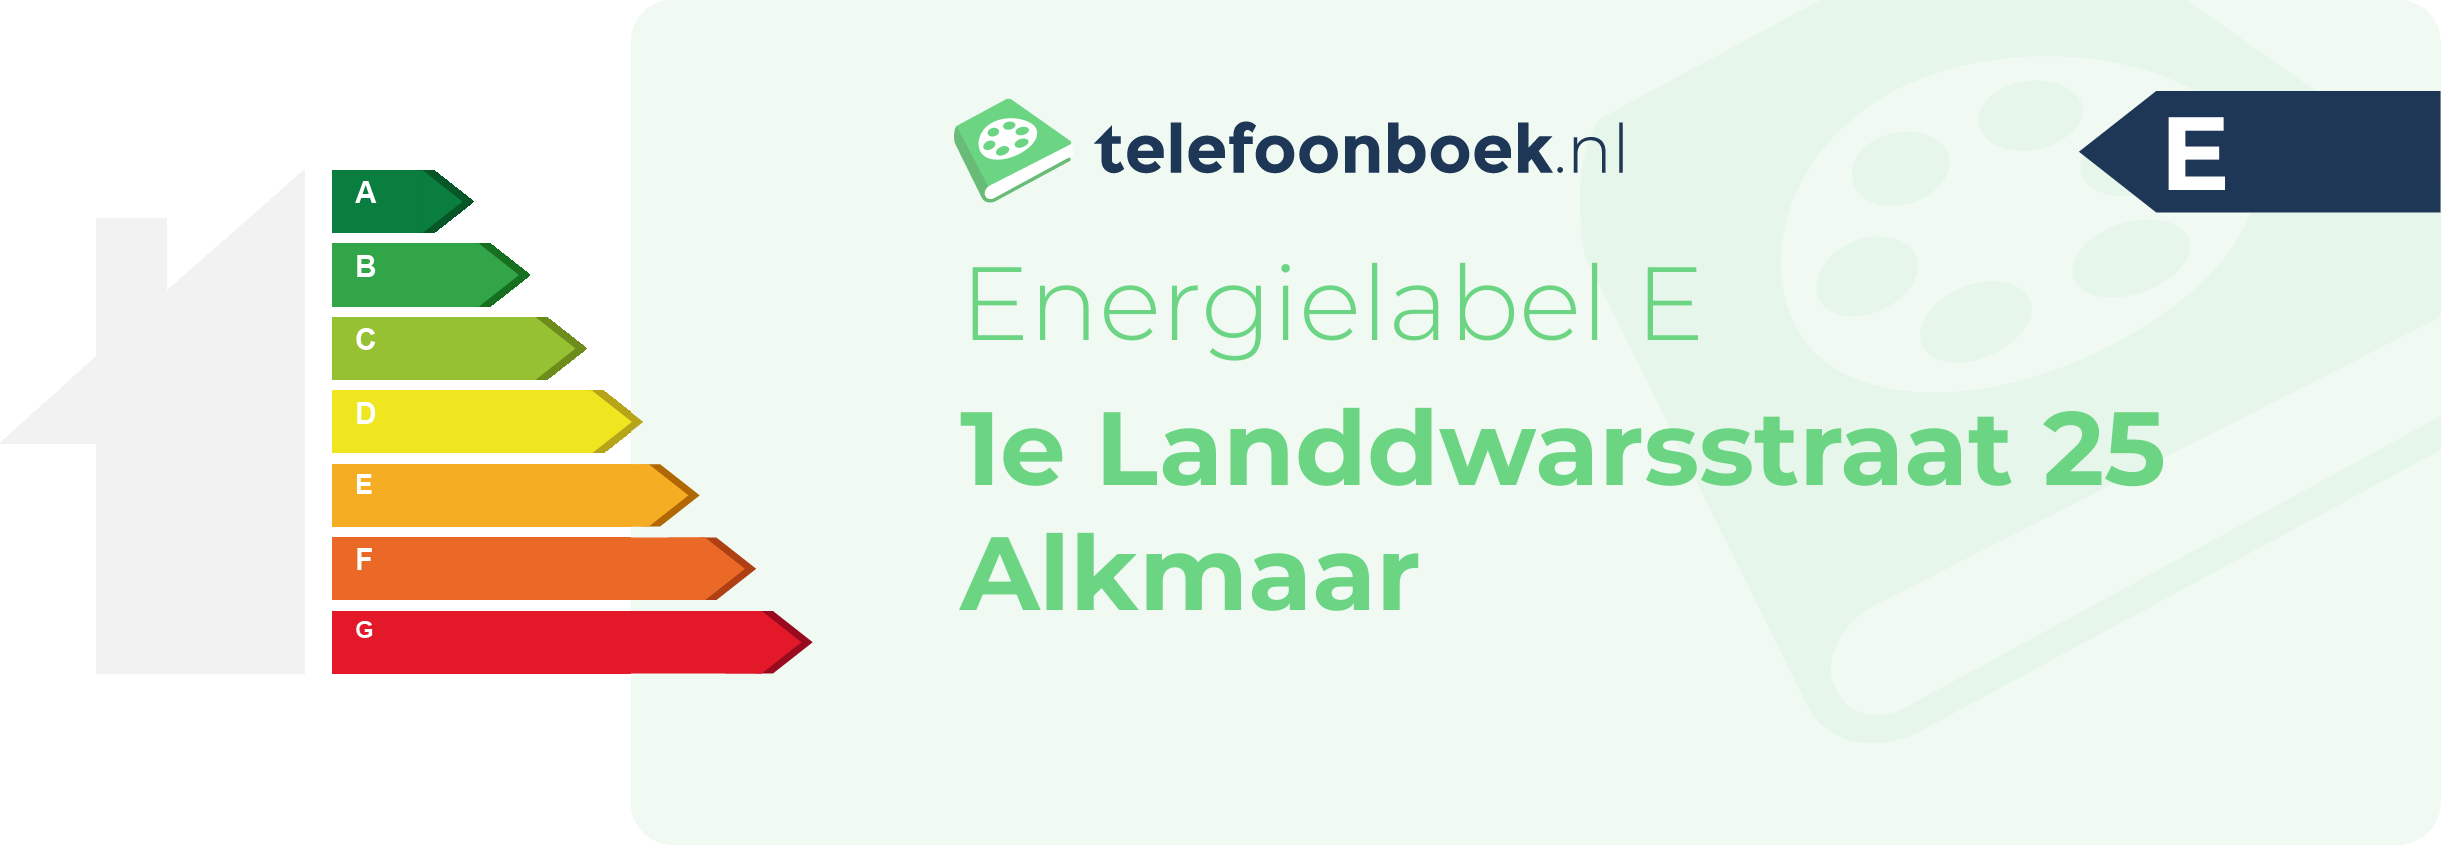 Energielabel 1e Landdwarsstraat 25 Alkmaar